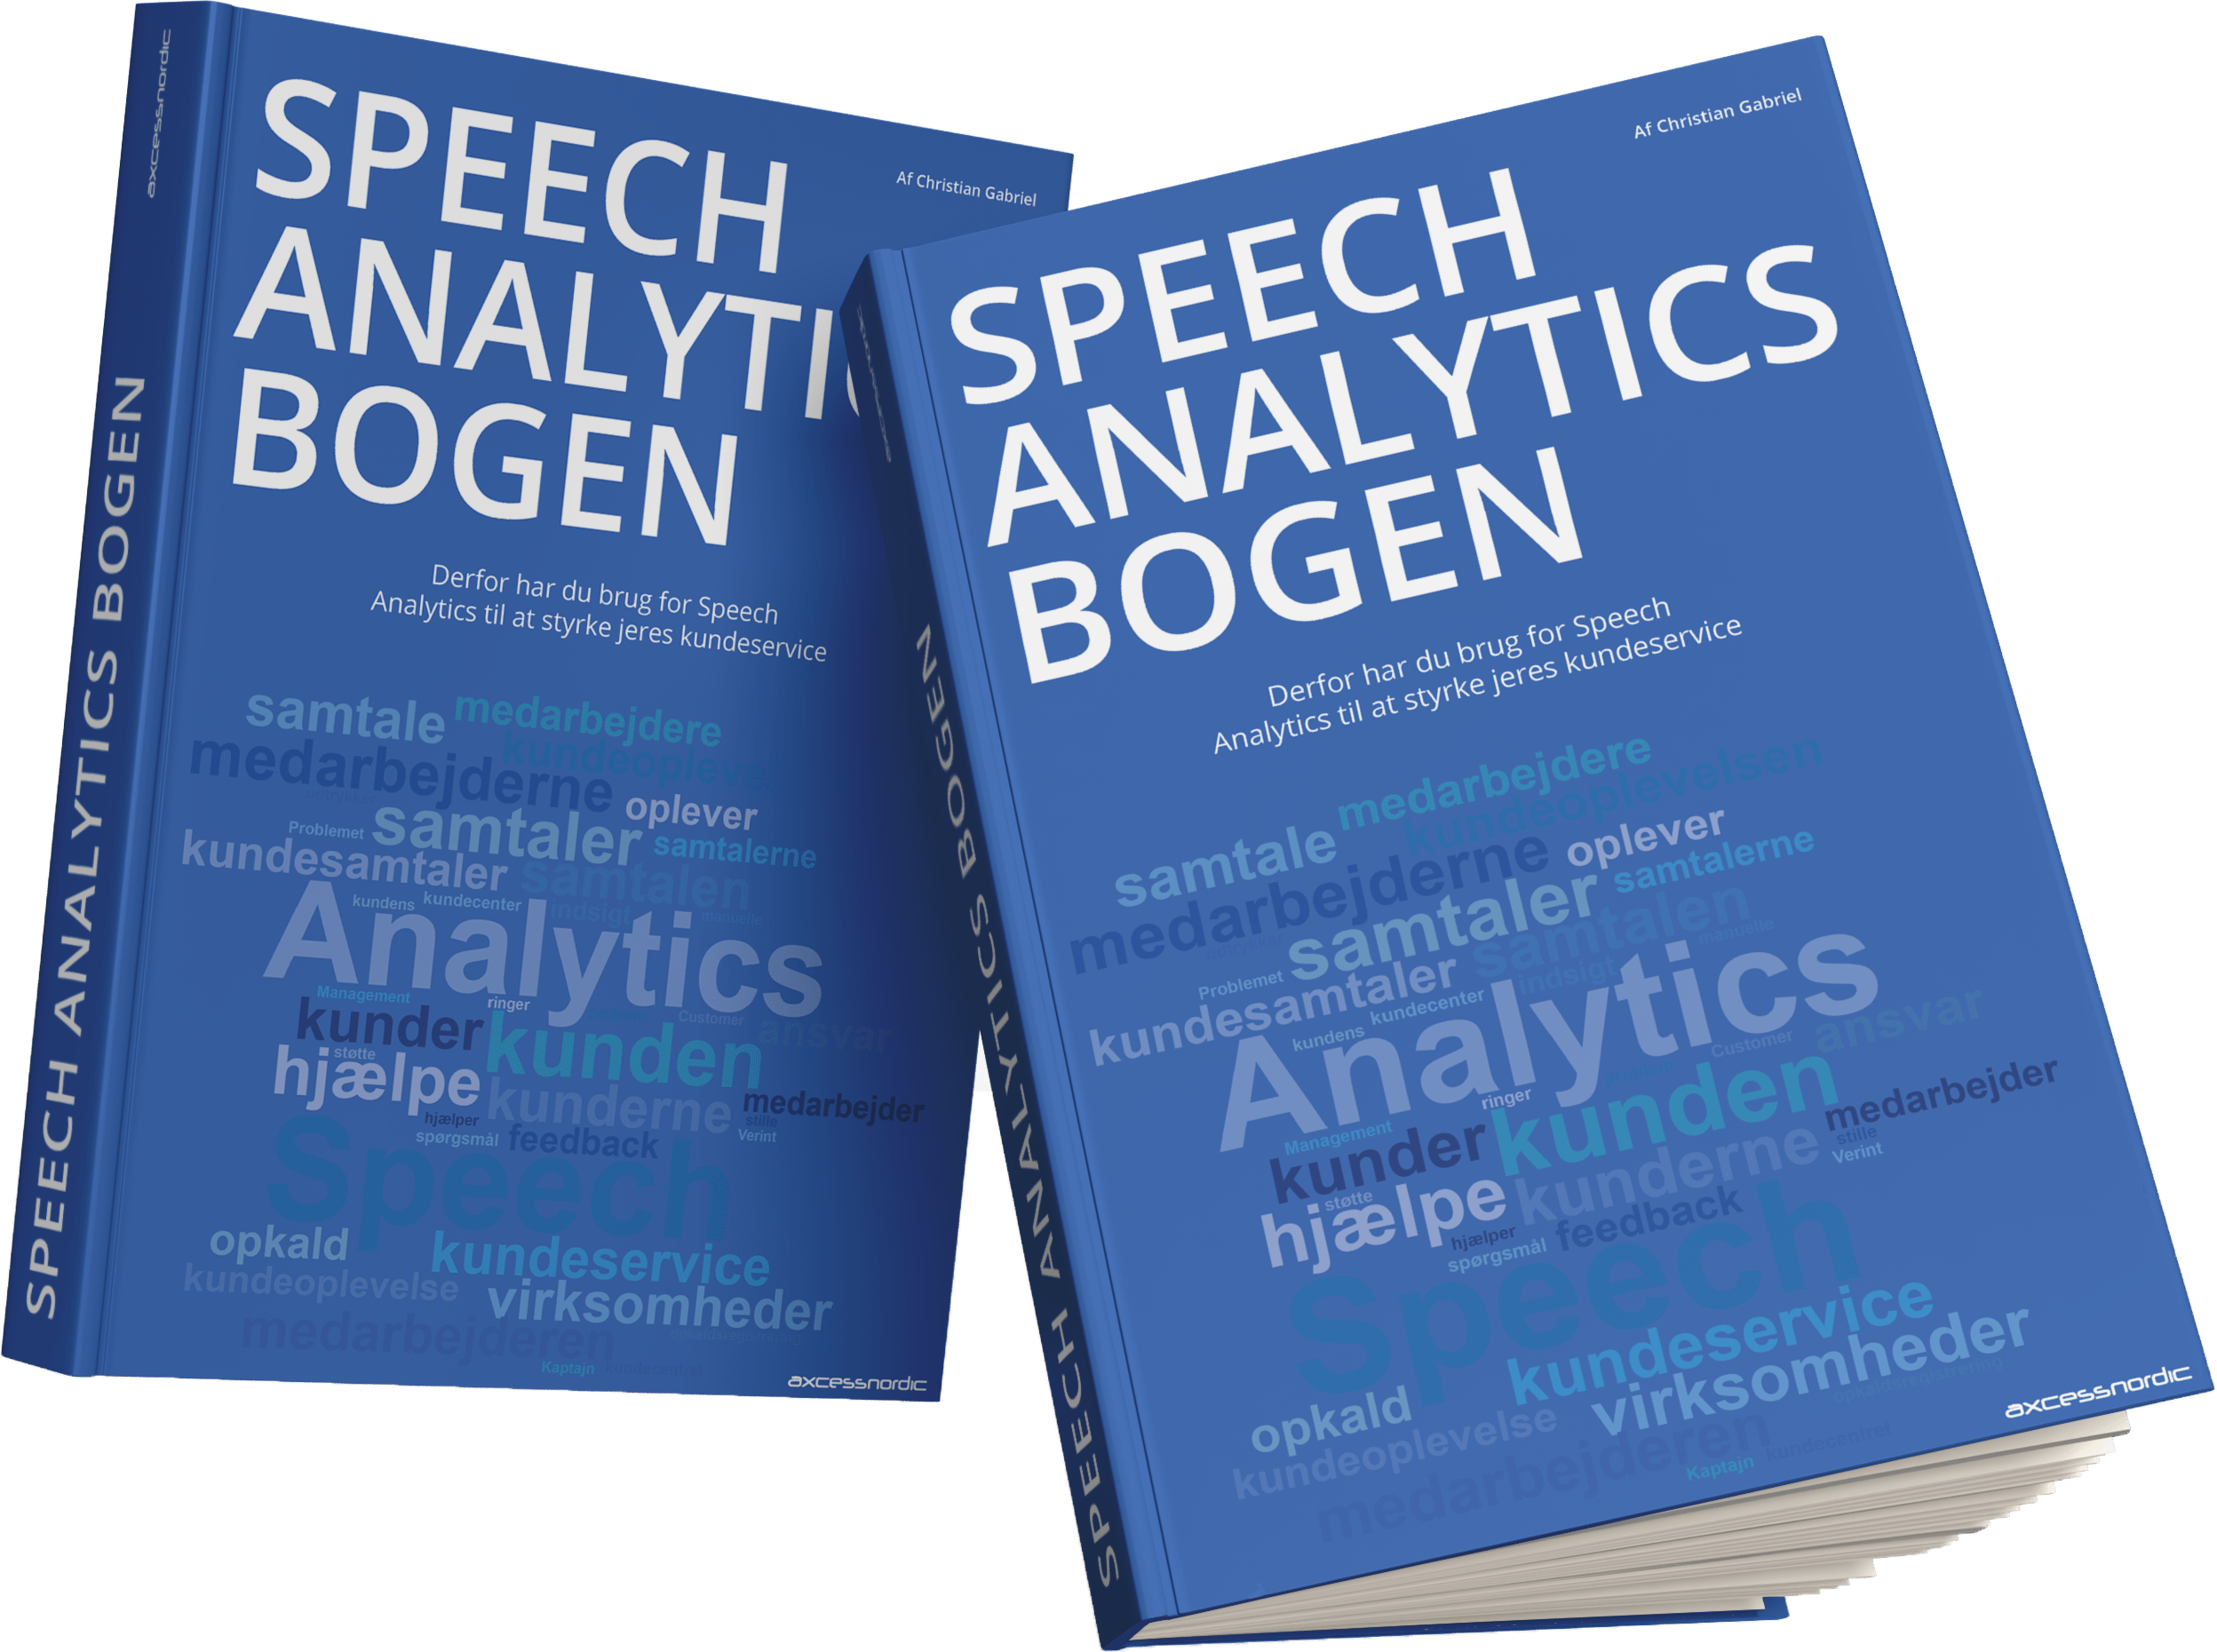 Speech Analytics bogen - derfor har du brug Speech Analytics til at styrke jeres kundeservice